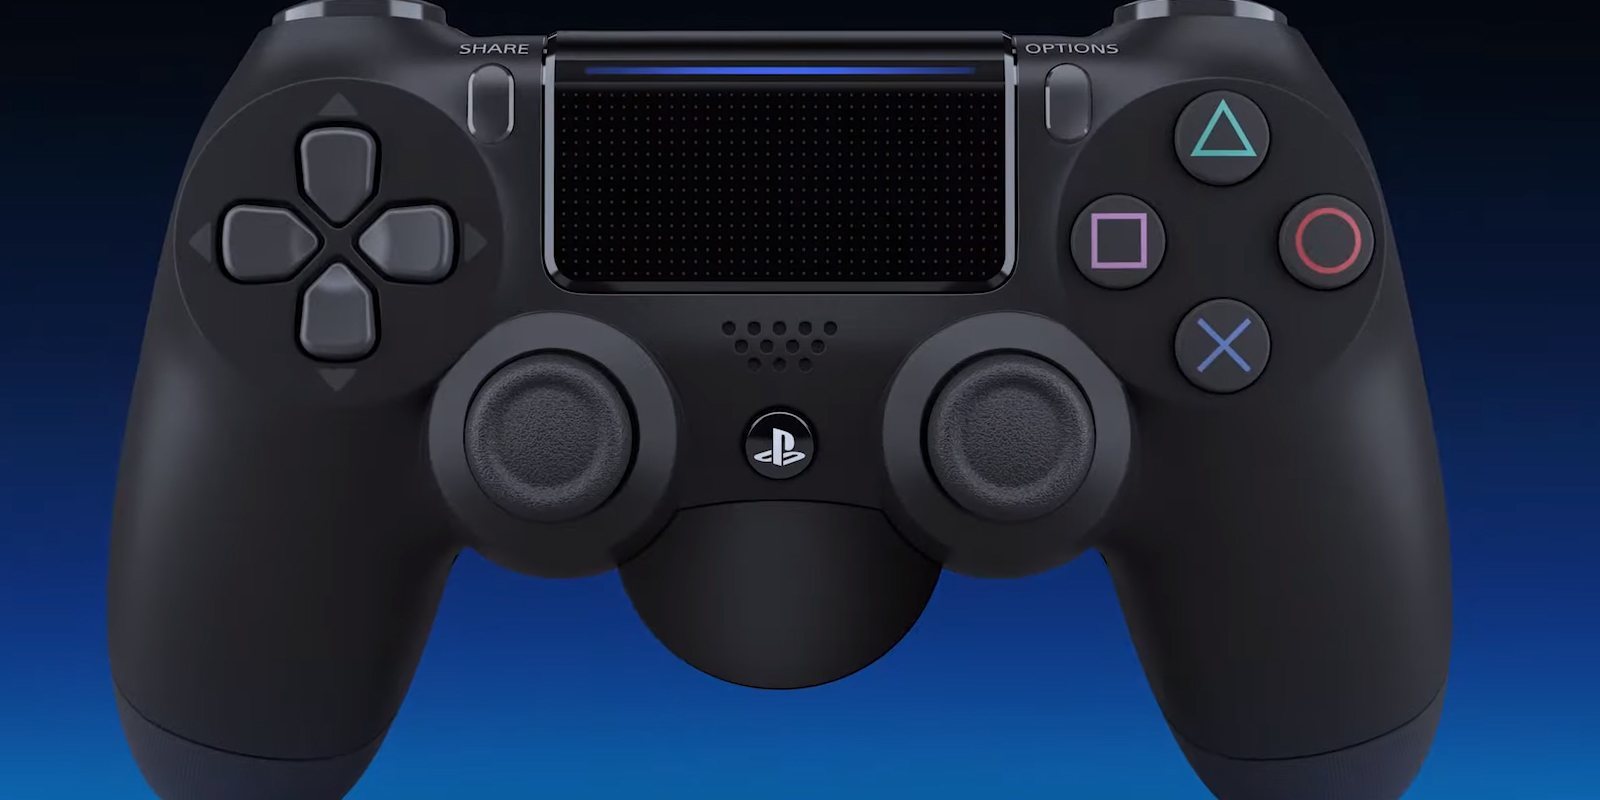 El DualShock 4 de Sony recibe un nuevo accesorio para jugadores profesionales